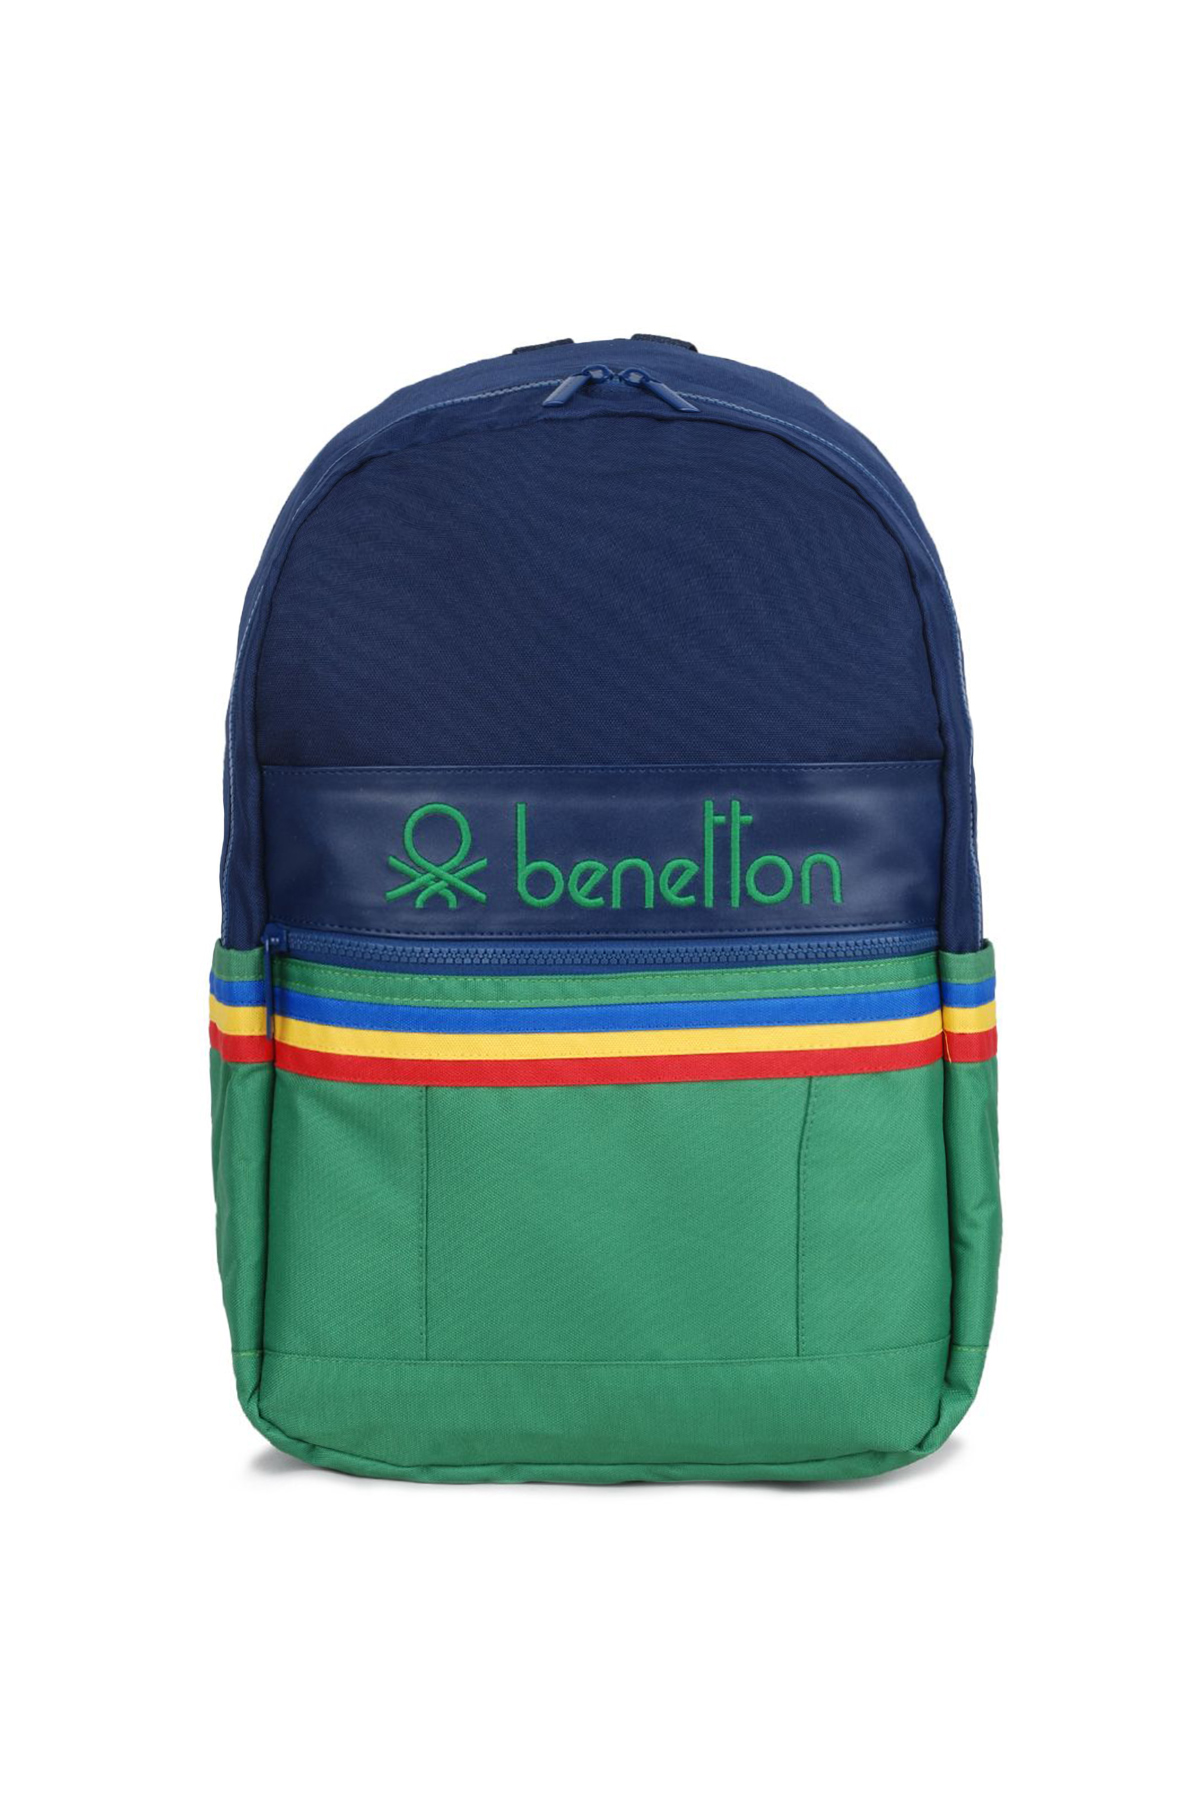 United Colors of Benetton Okul Sırt Çantası 70038 Renkli - eBavul